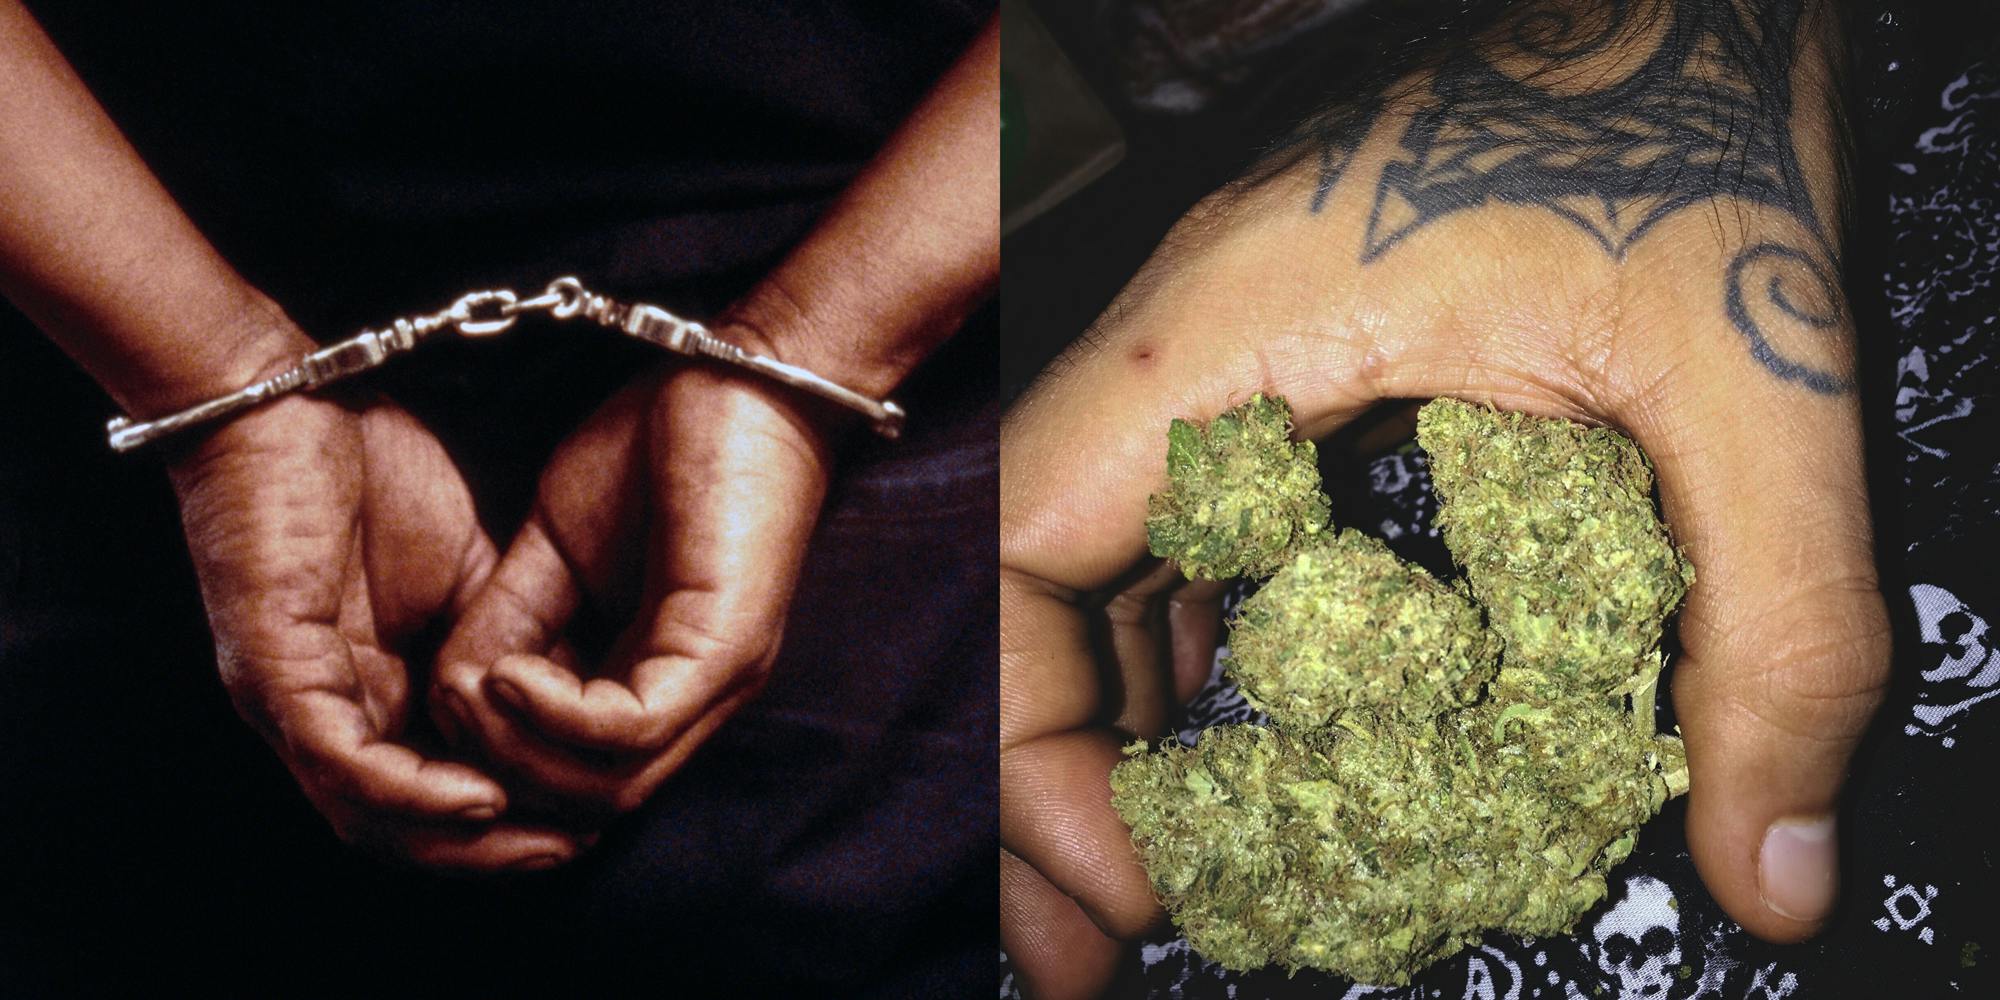 Tattooed Hand of schizophrenic murderer Holding Marijuana At Home